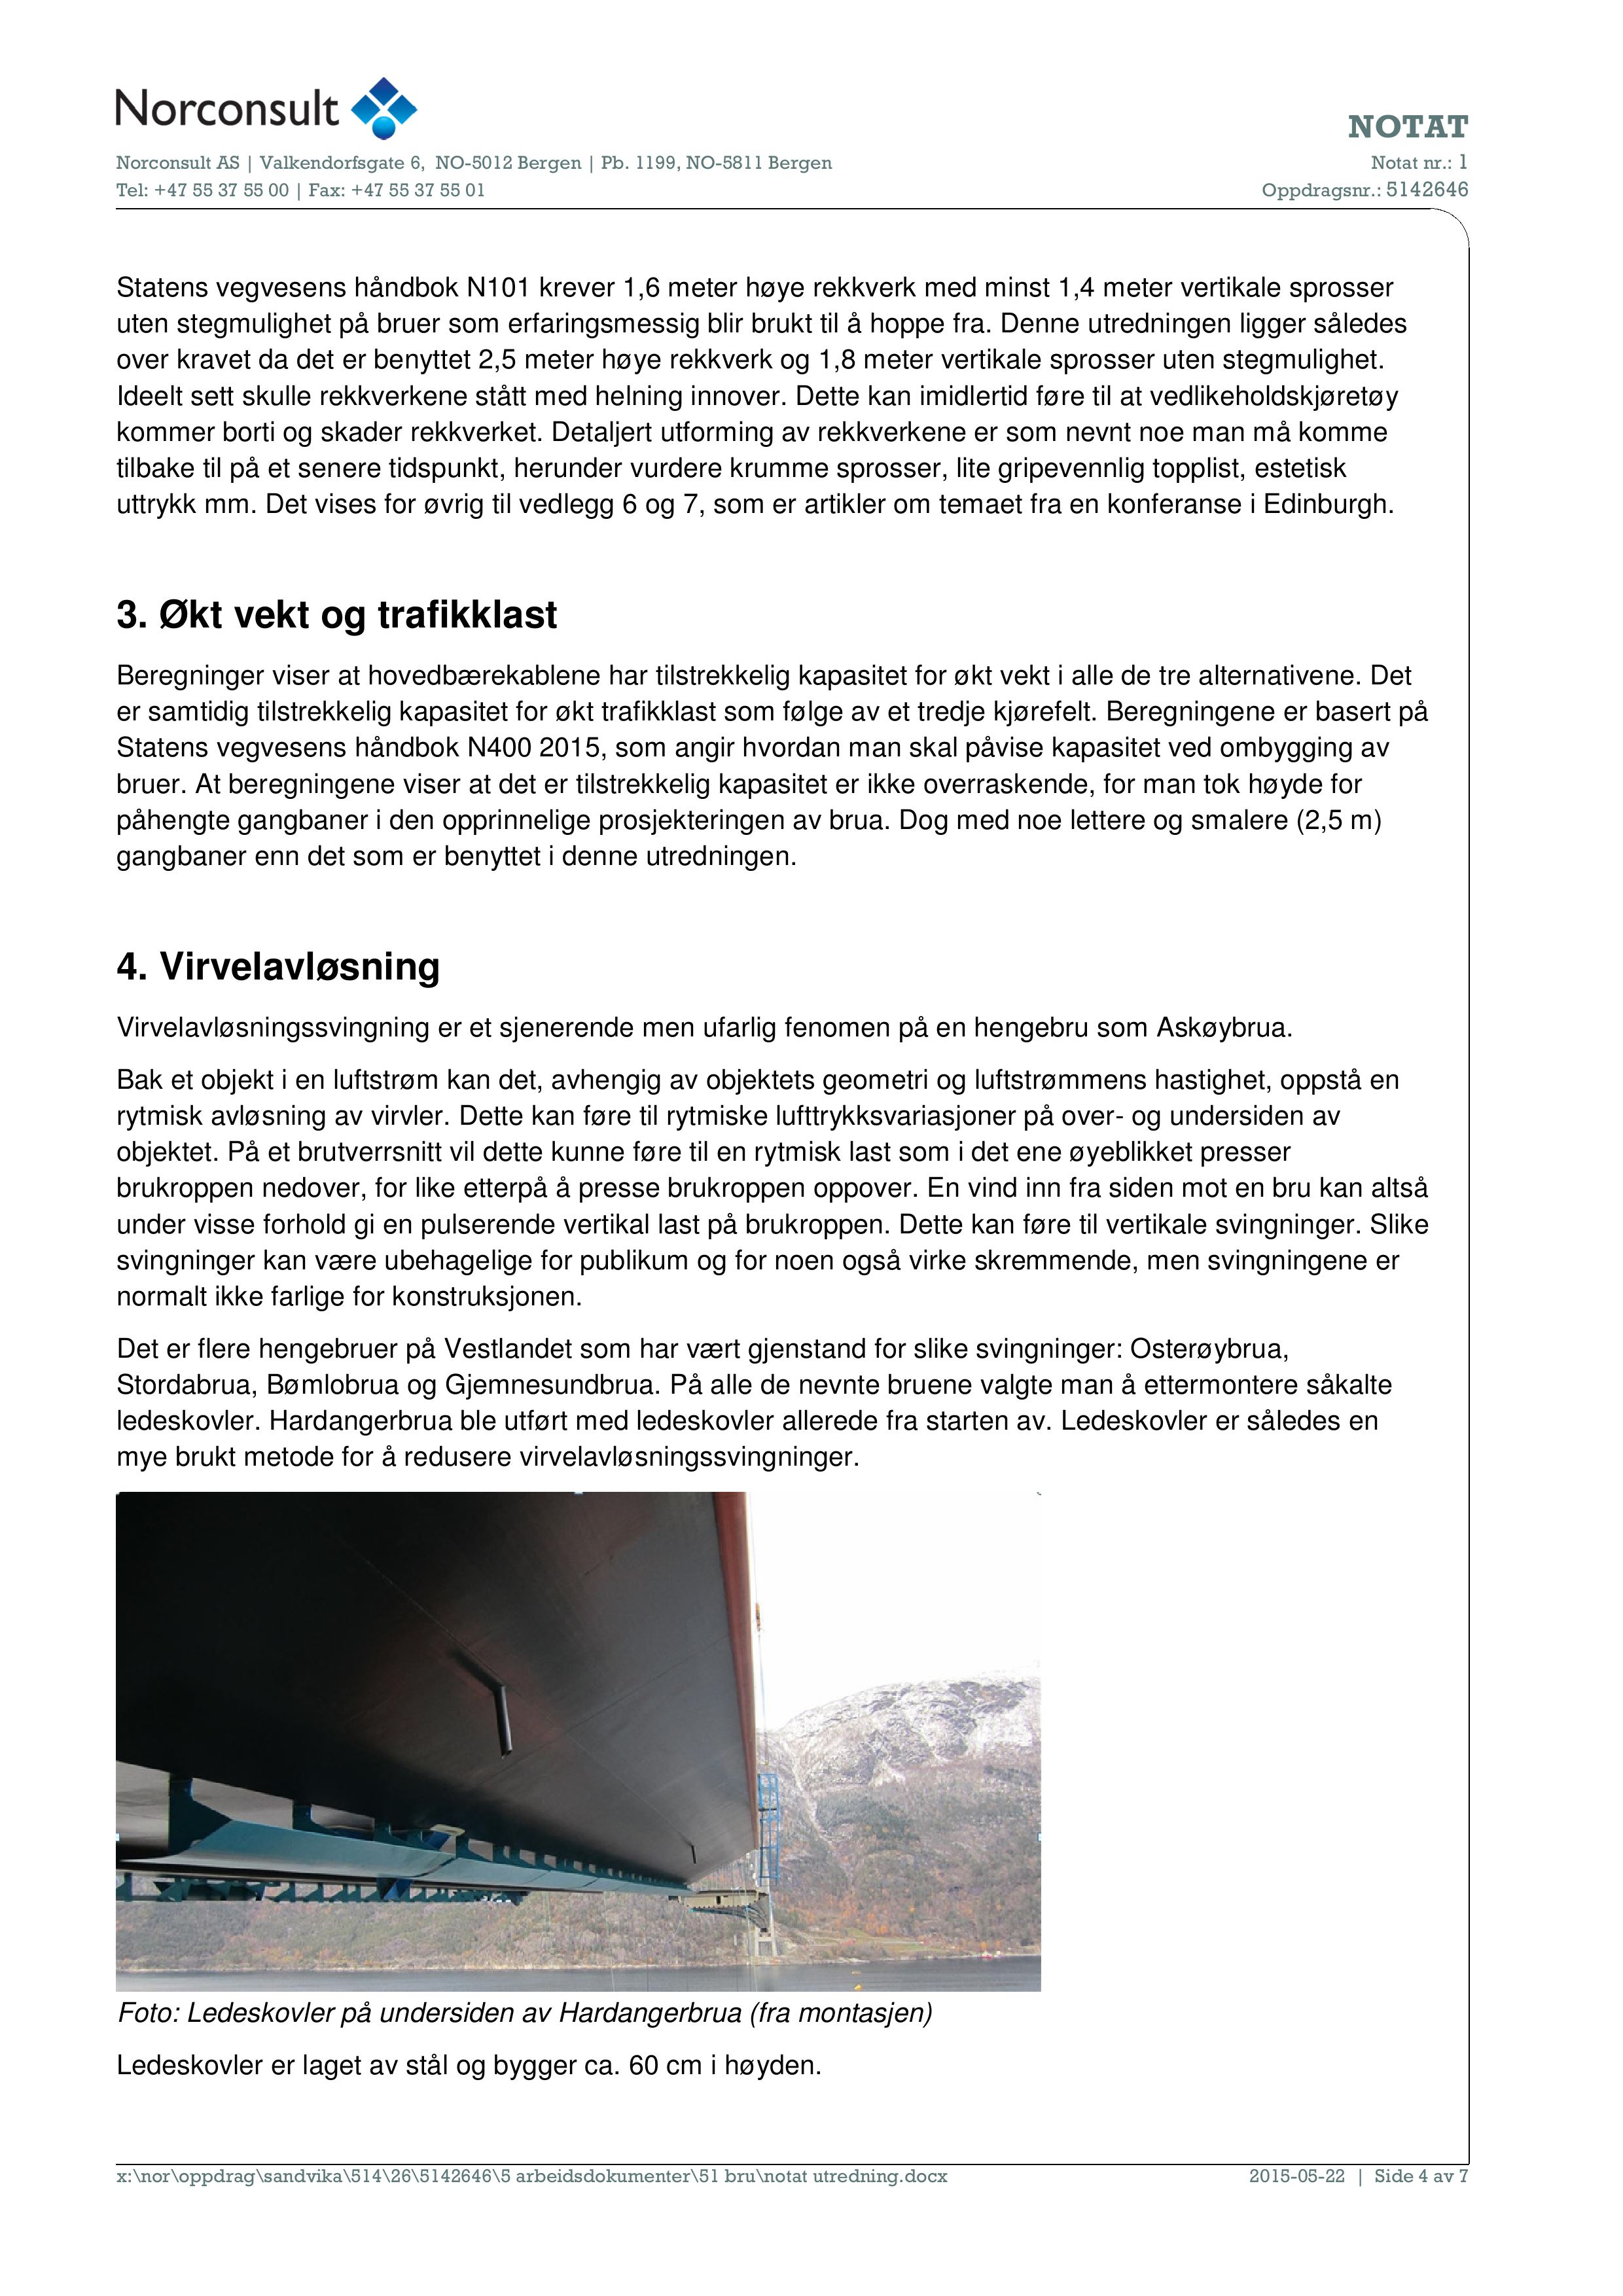 Statens vegvesens håndbok N101 krever 1,6 meter høye rekkverk med minst 1,4 meter vertikale sprosser uten stegmulighet på bruer som erfaringsmessig blir brukt til å hoppe fra.